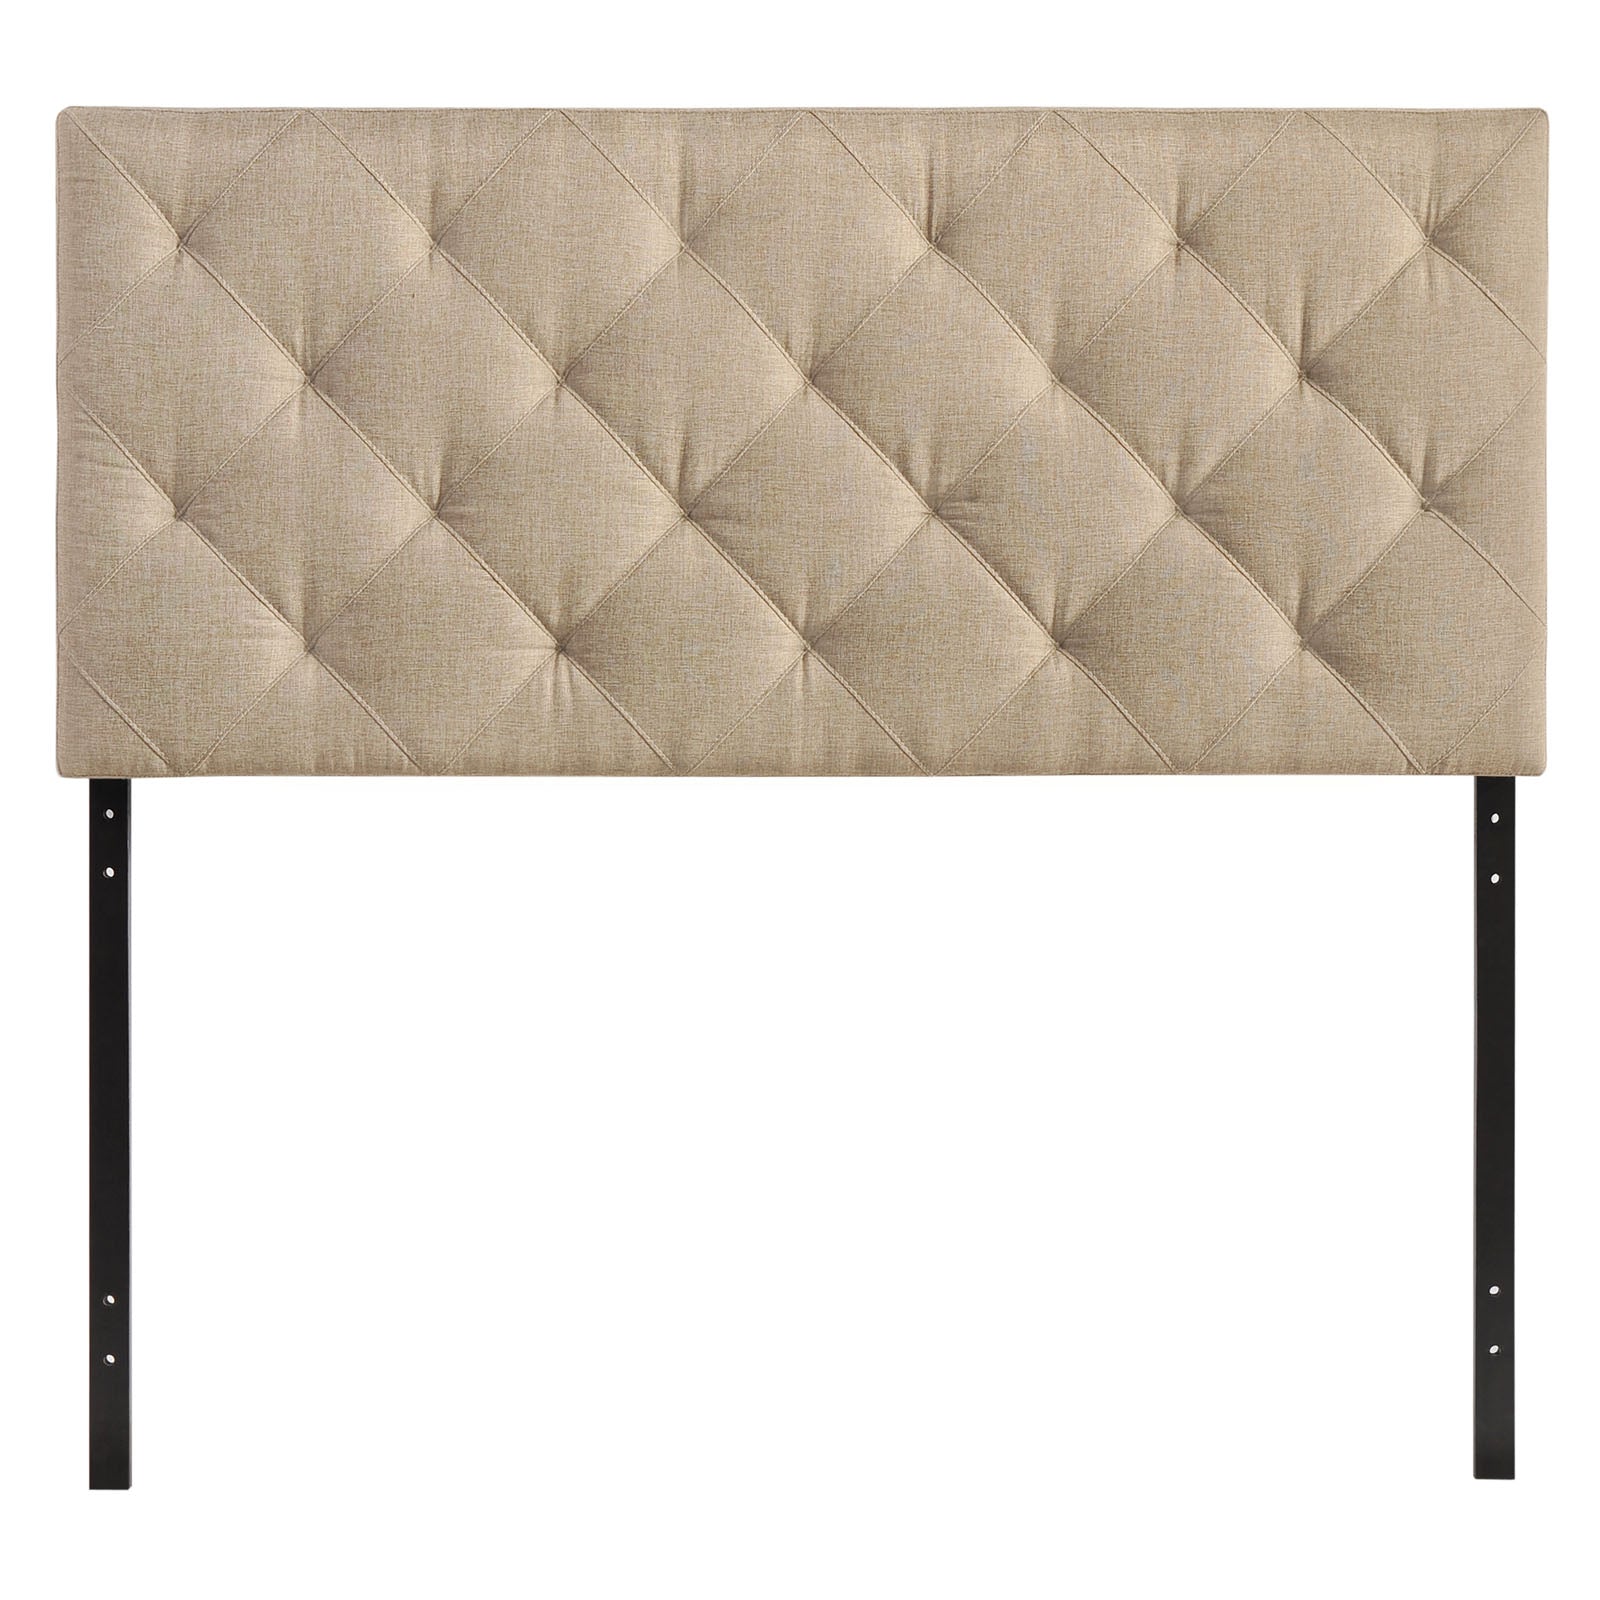 Theodore Full Upholstered Fabric Headboard - East Shore Modern Home Furnishings